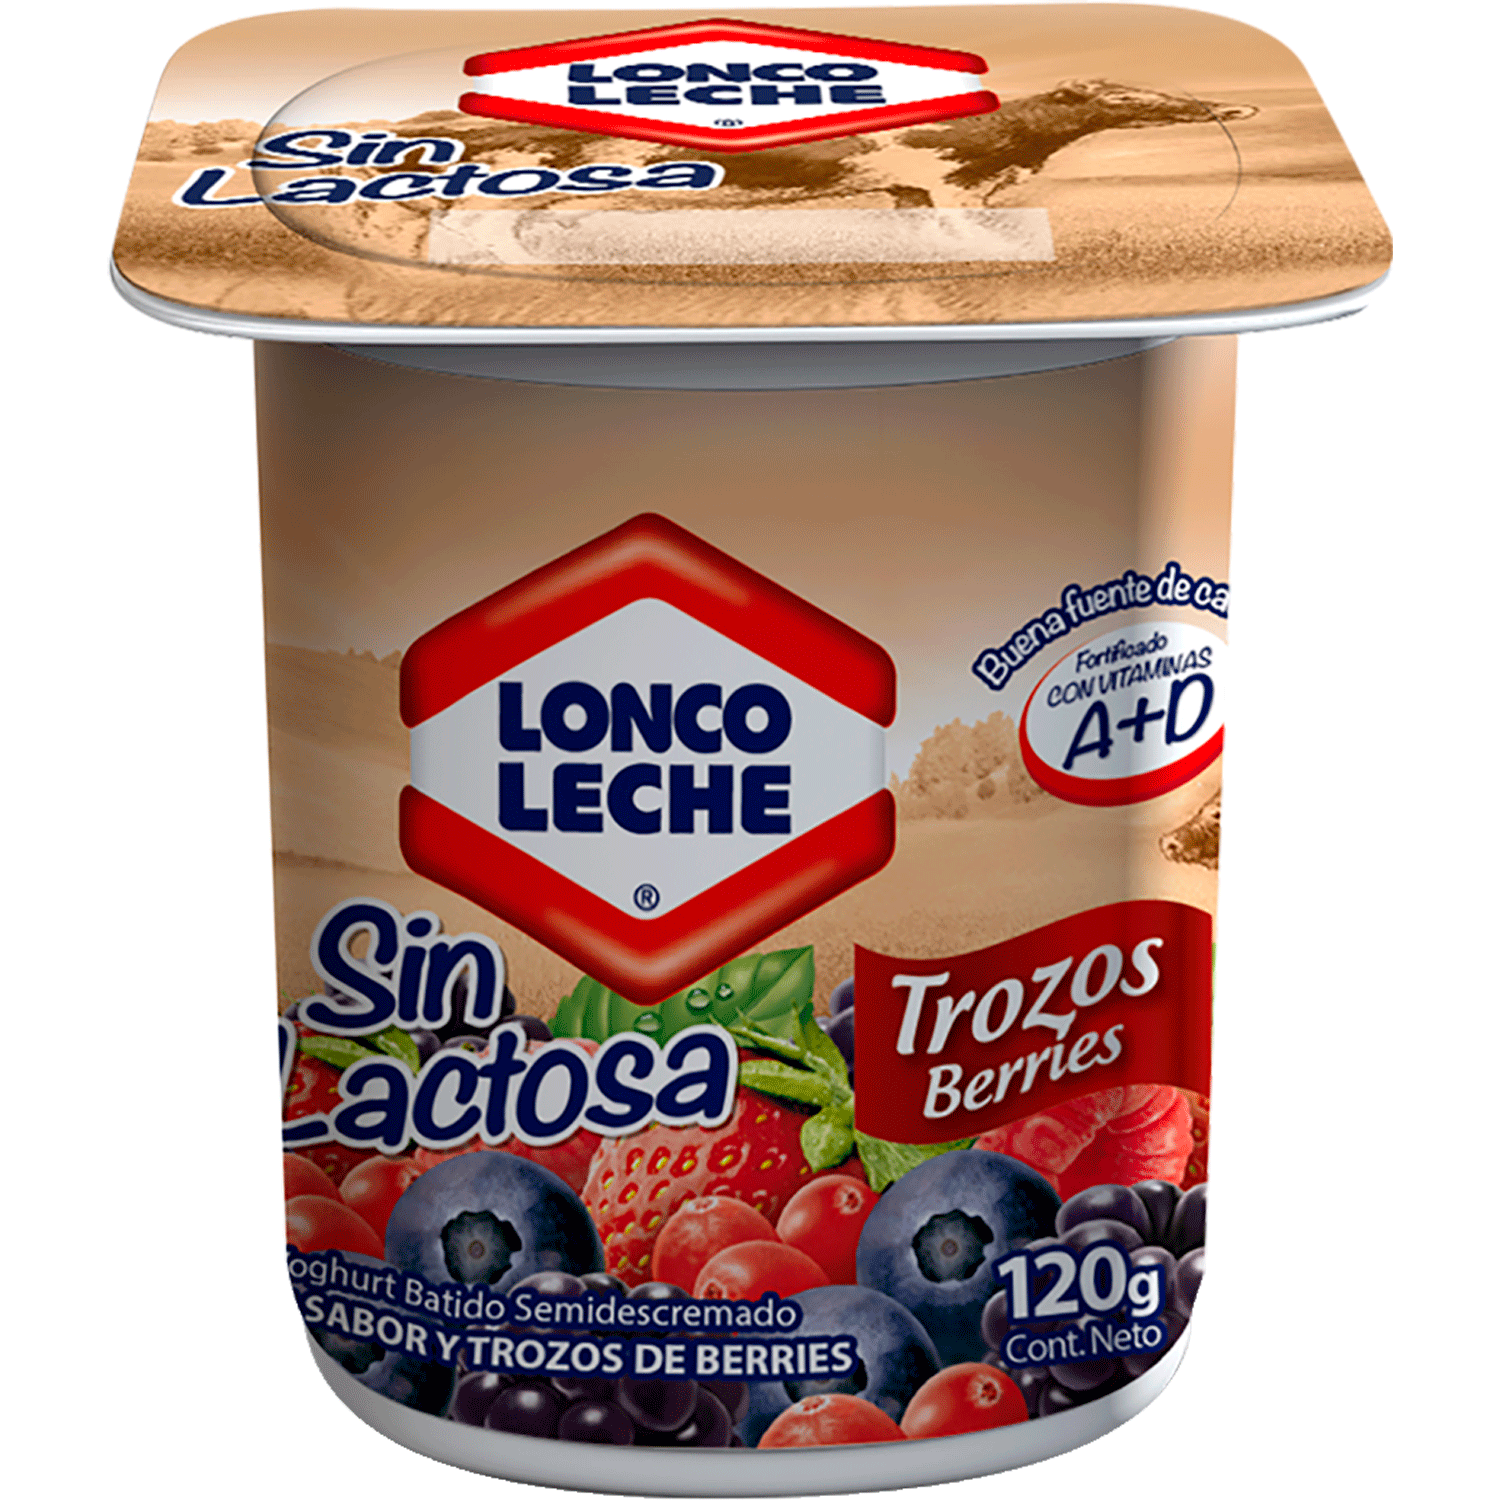 Encuentra en Jumbo el yogurt sin lactosa digestión Lonco Leche.